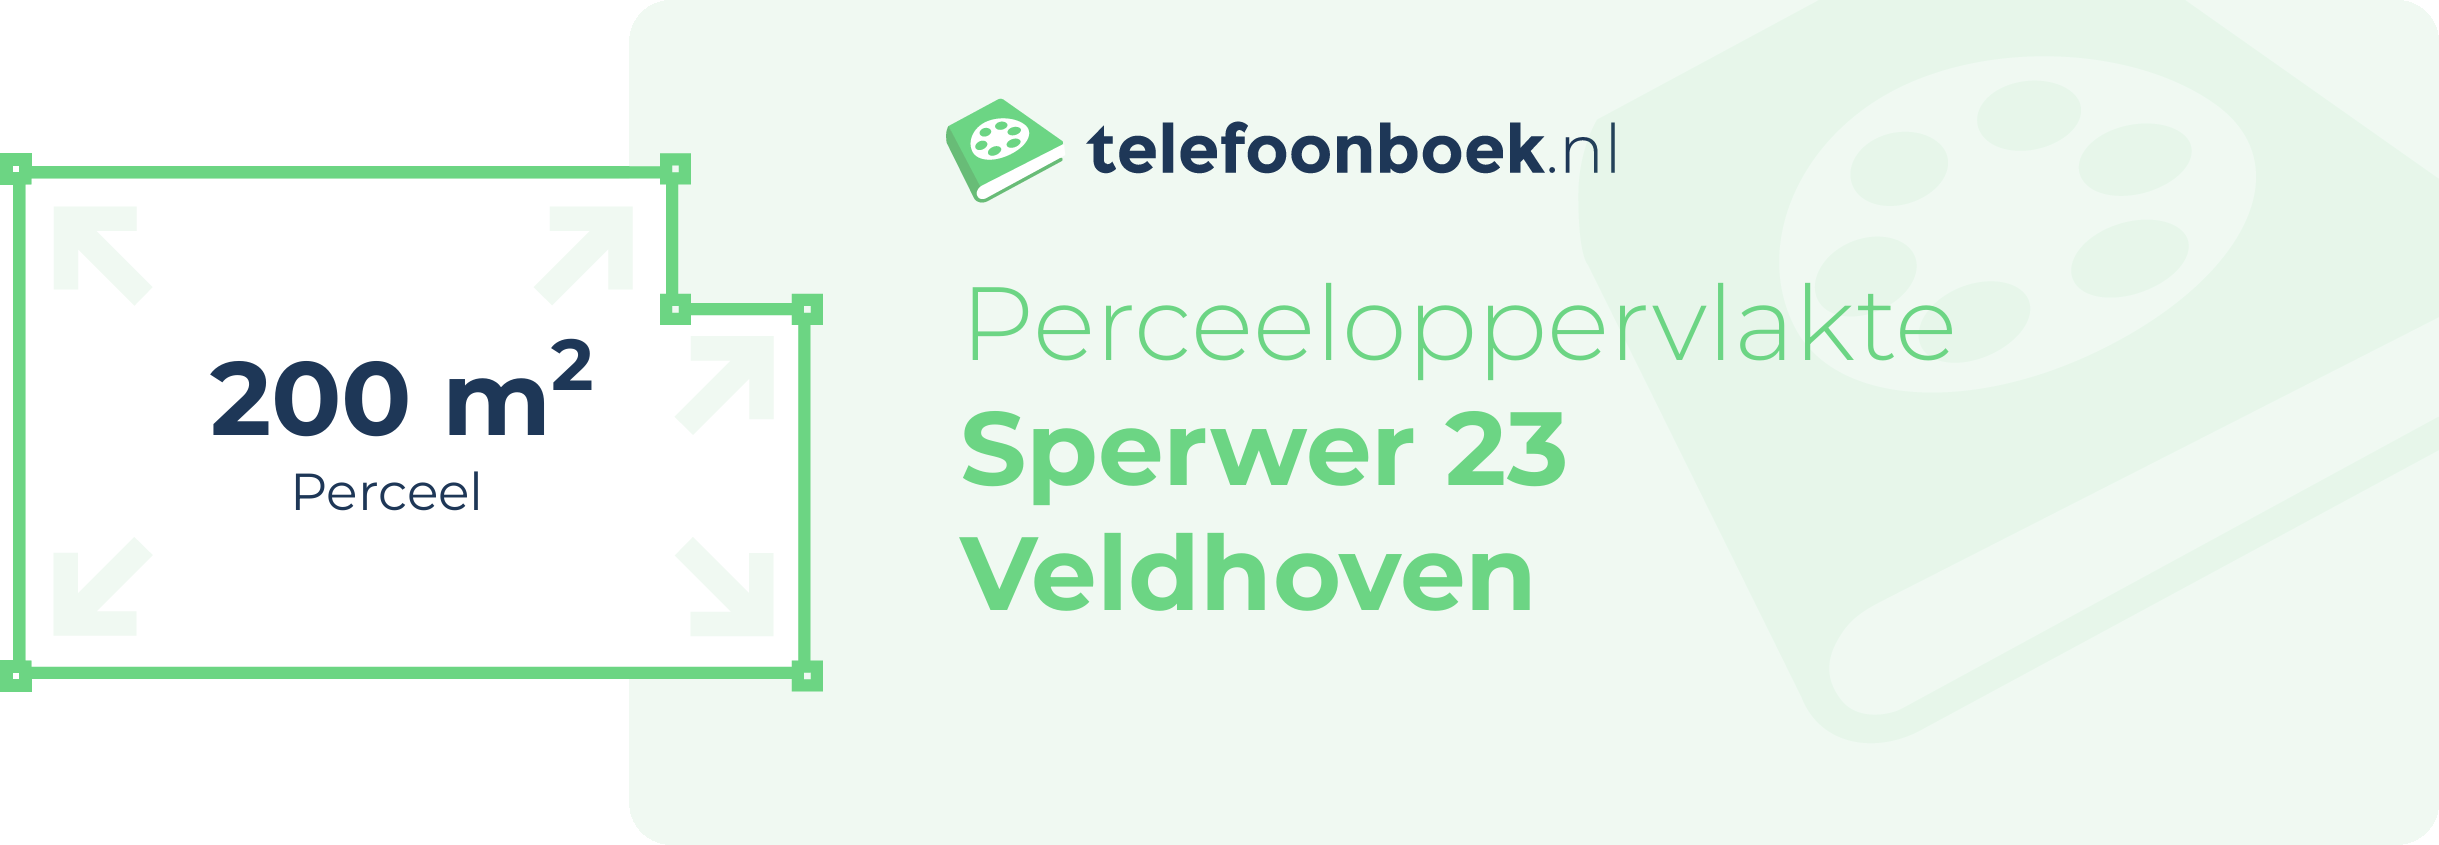 Perceeloppervlakte Sperwer 23 Veldhoven